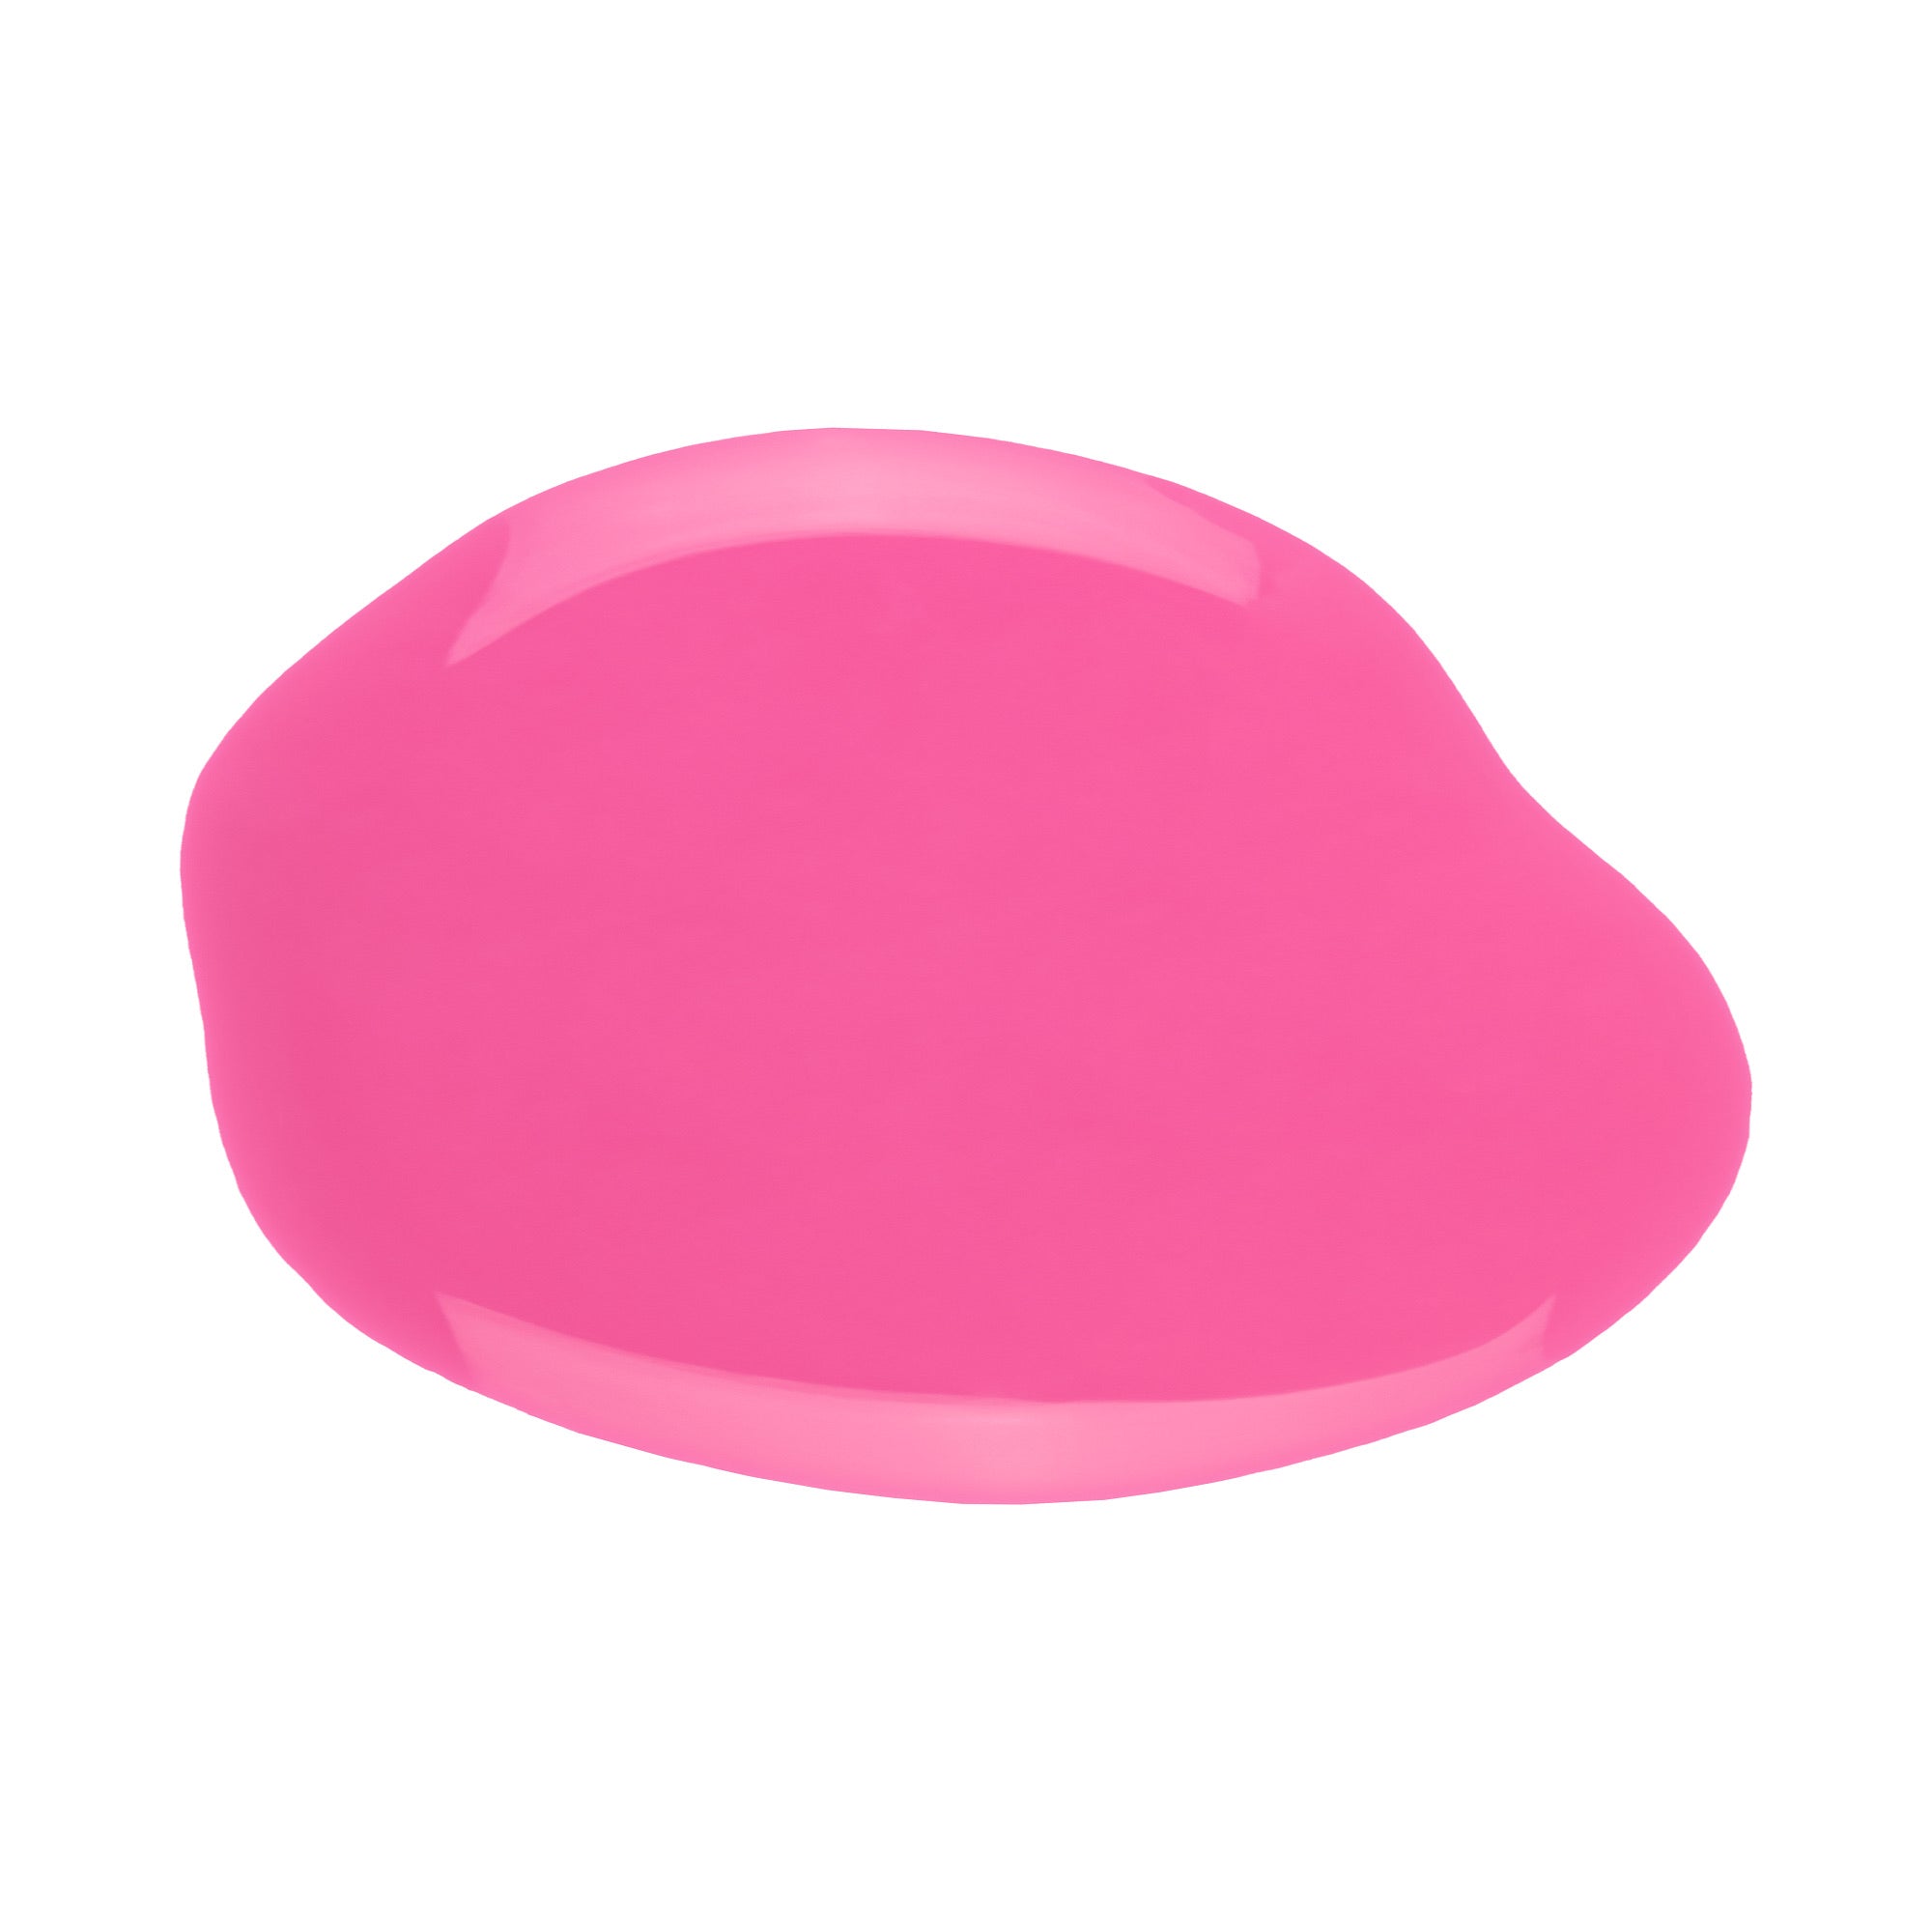 Alix Avien - Nail Polish Gel No.31 (Candy Pink)